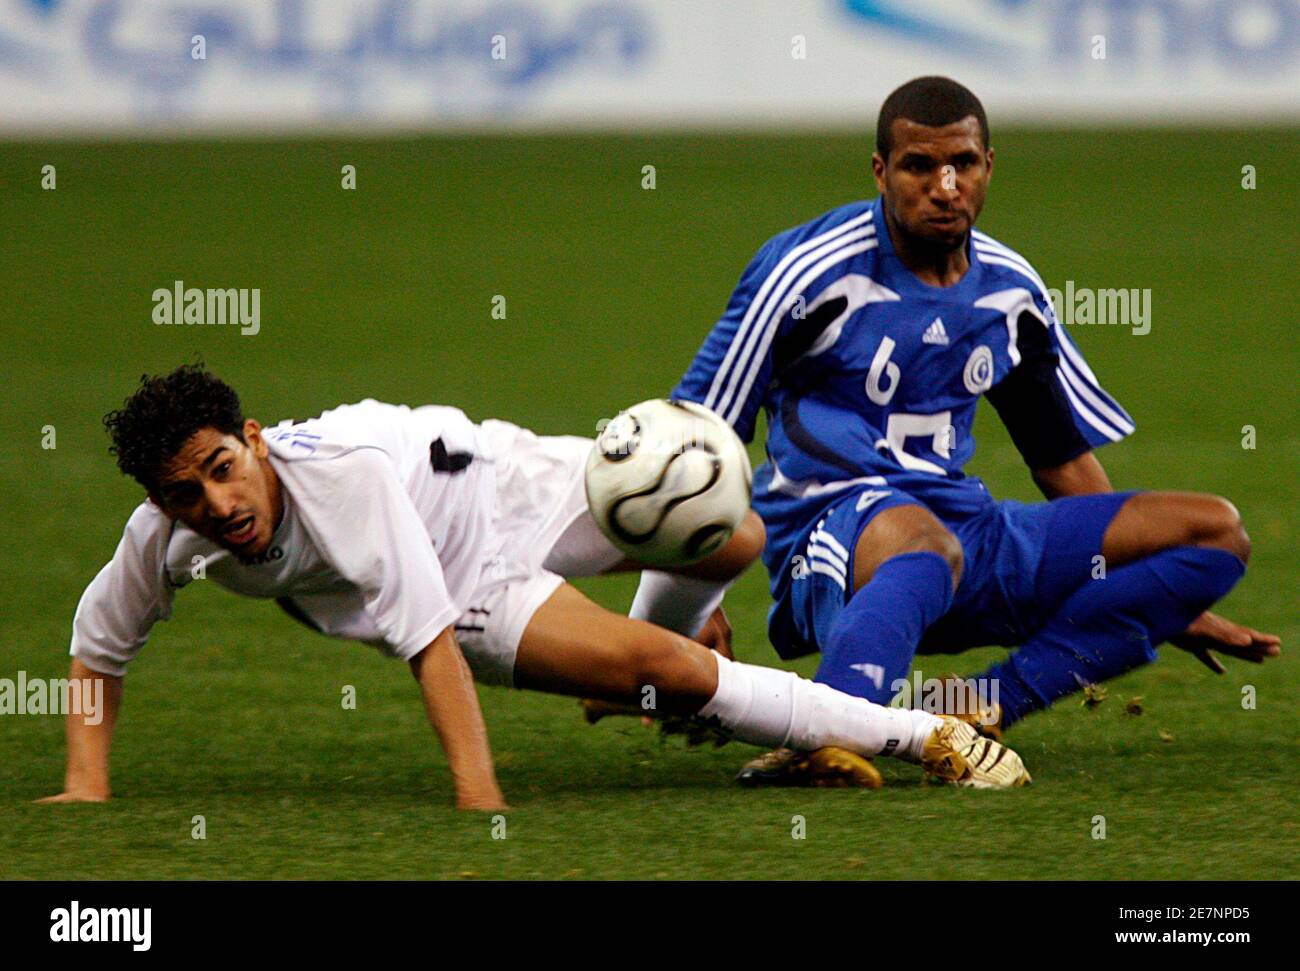 Khaled Al Zakar (R) d'Al Hilal se bat pour le ballon avec Ahmed Oteef d'Al Shabab lors de leur match de football de qualification de la coupe du Prince héritier saoudien à Riyad le 1er mars 2008. REUTERS/Fahad Shadeed (ARABIE SAOUDITE) Banque D'Images